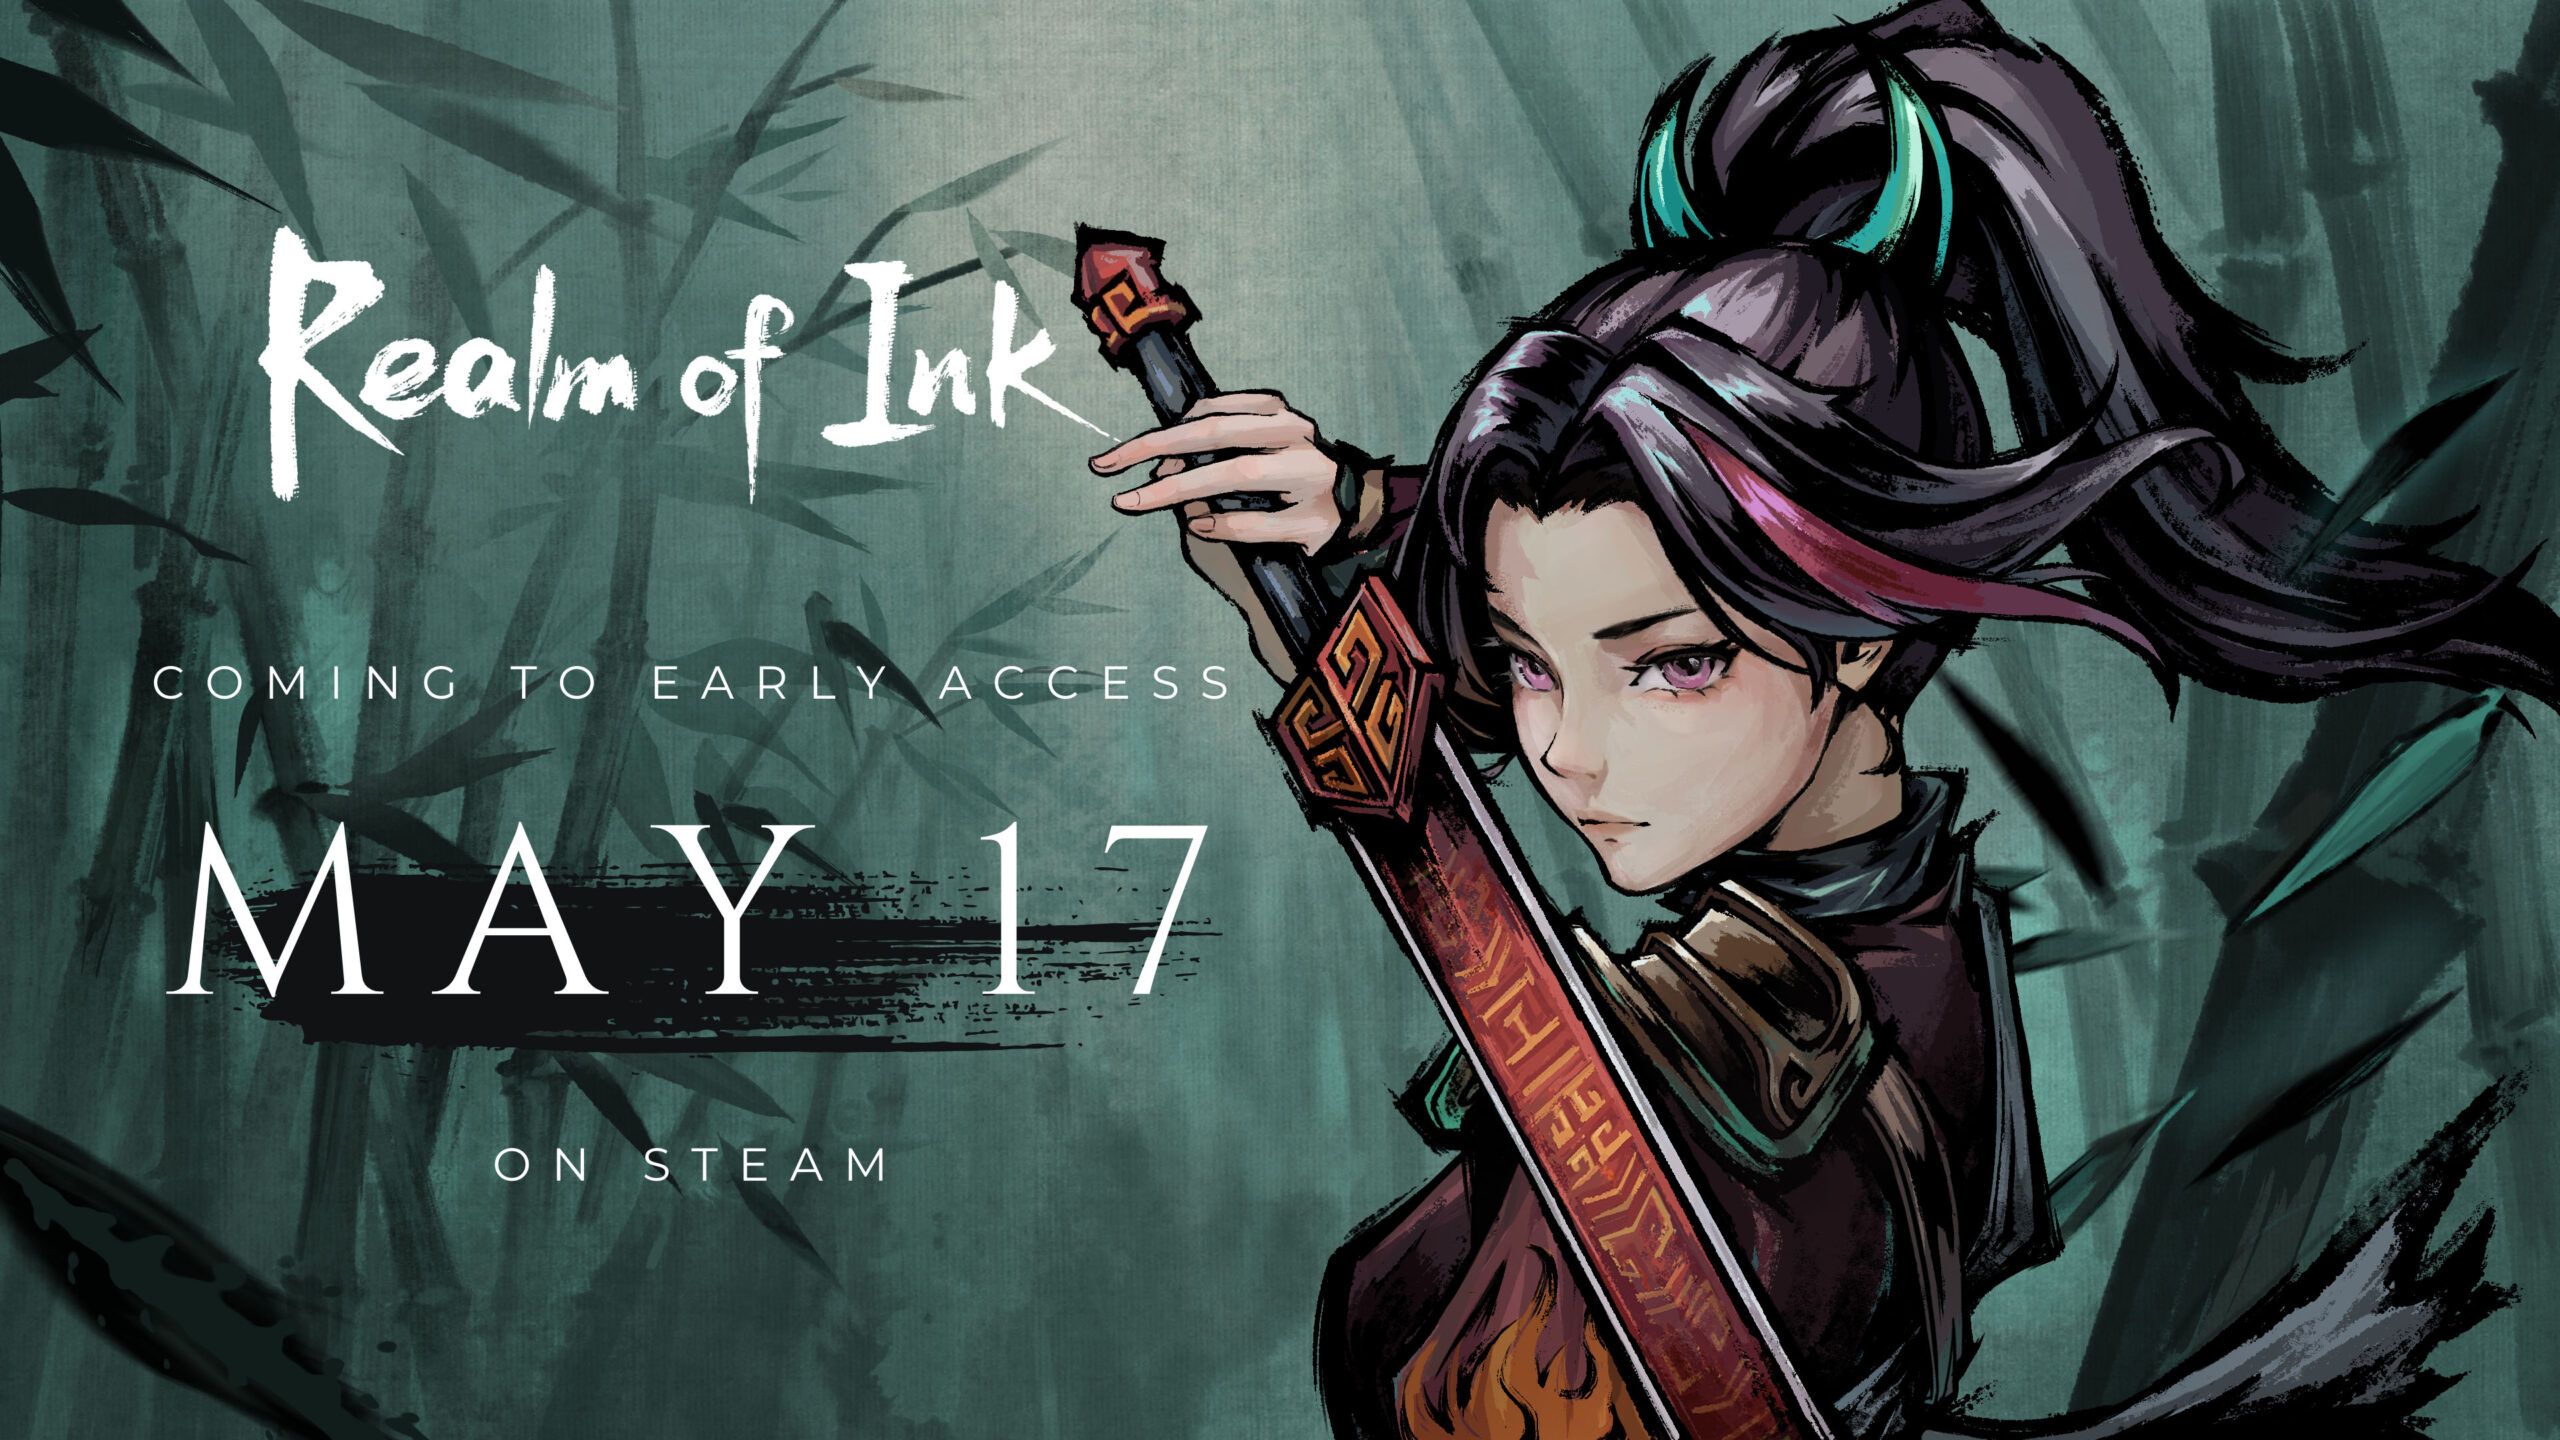 ealm of Ink será lançado em acesso antecipado para PC em 17 de maio